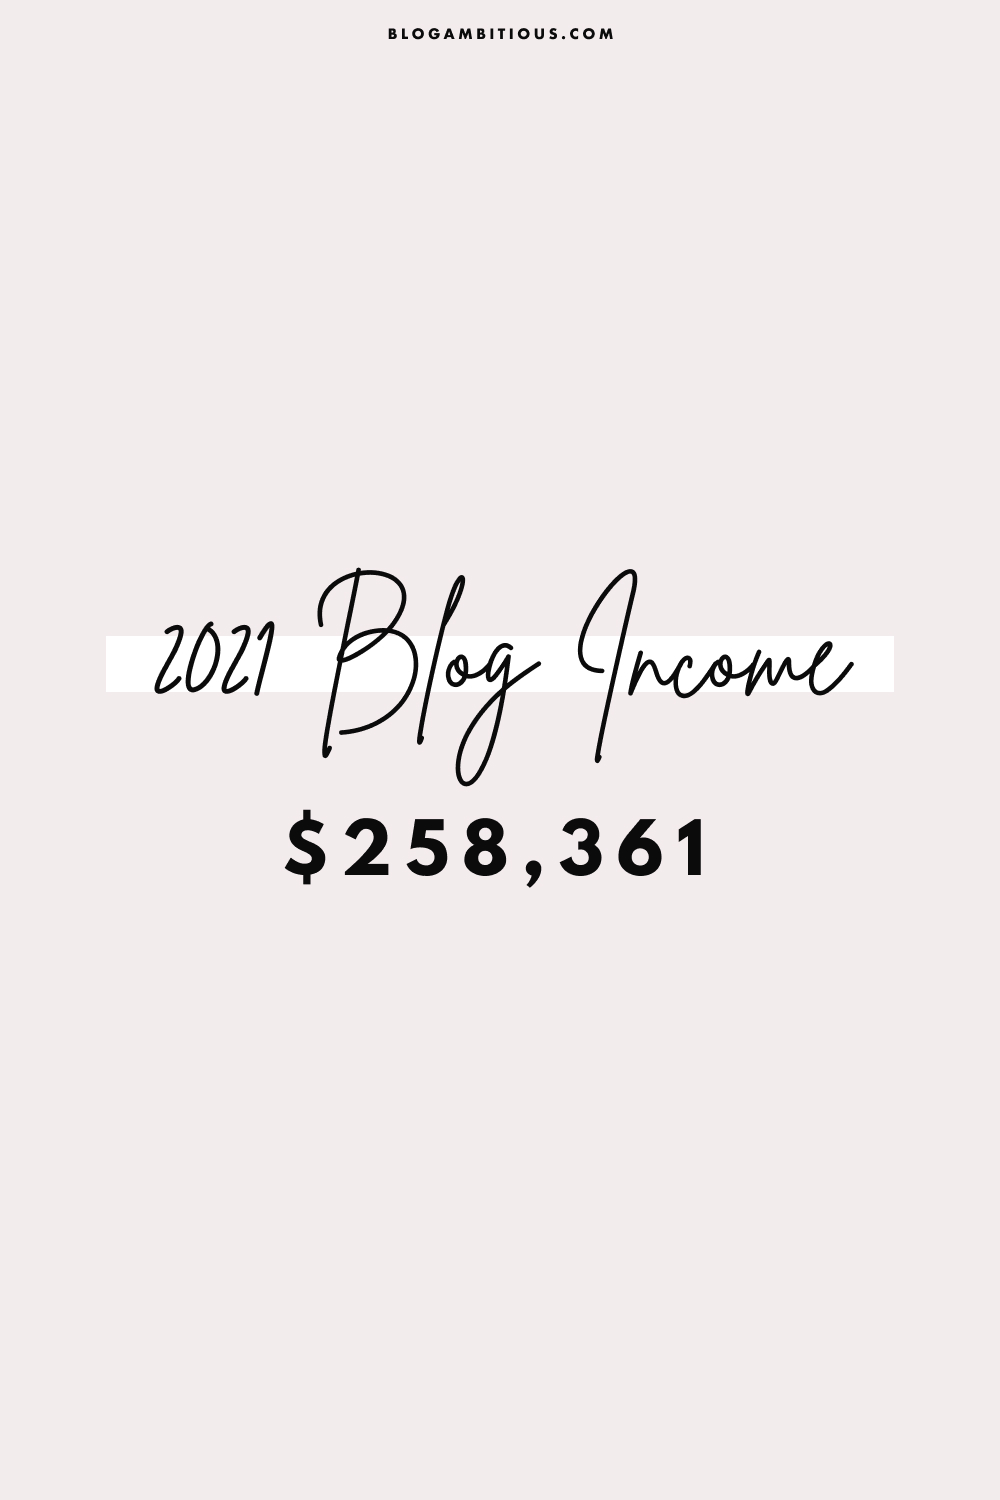 2021 Blog Income